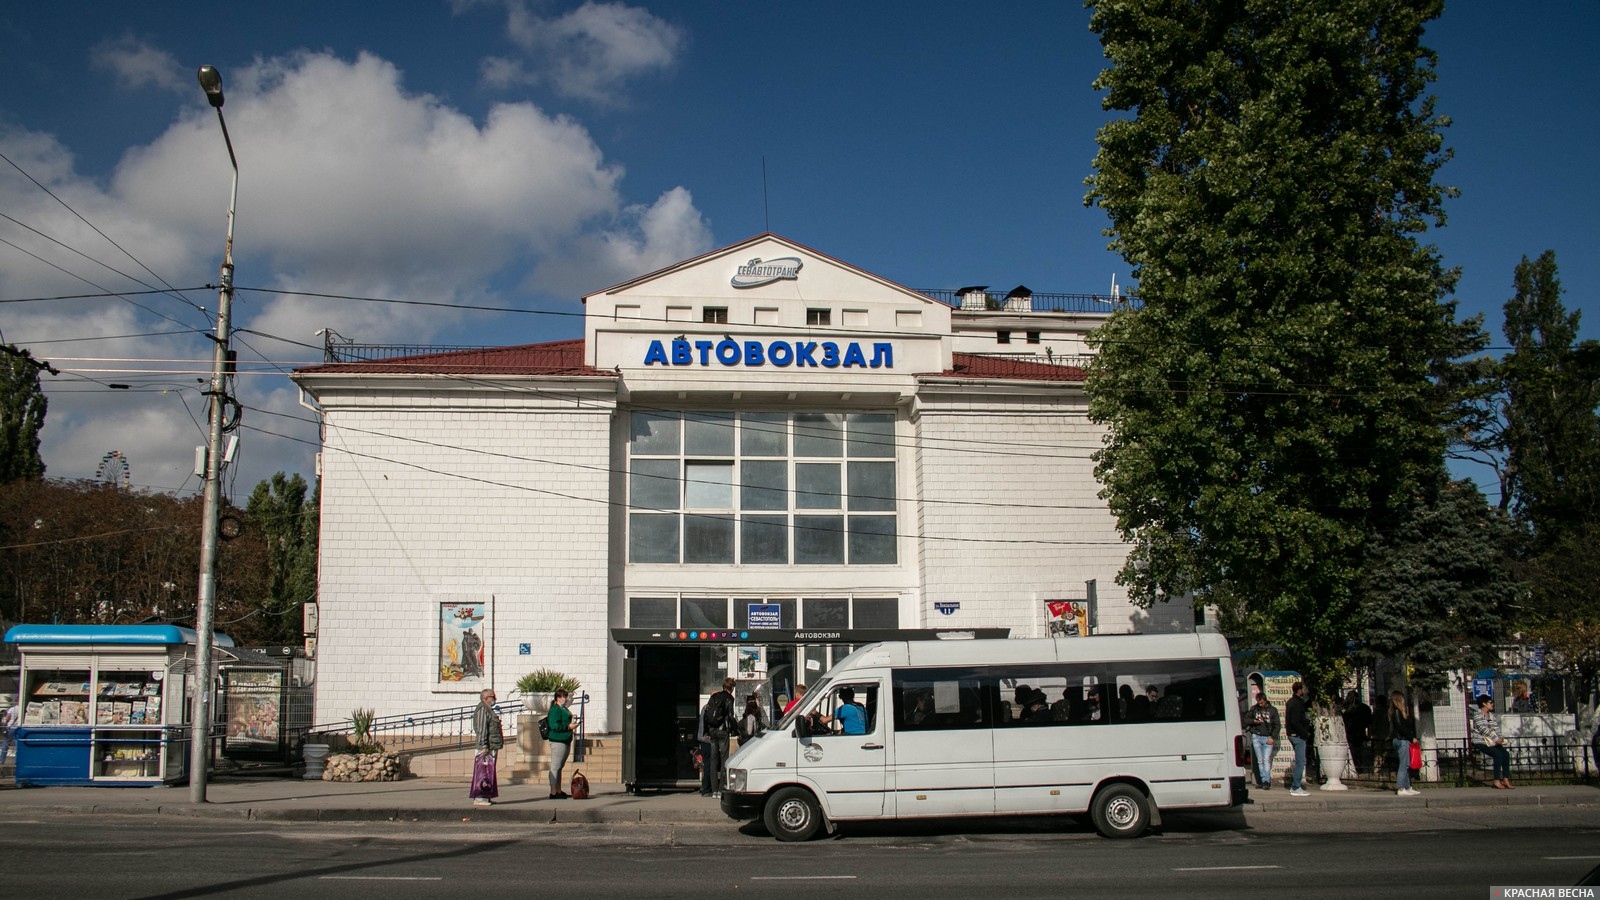 Автобусная остановка у автовокзала. Севастополь, Крым